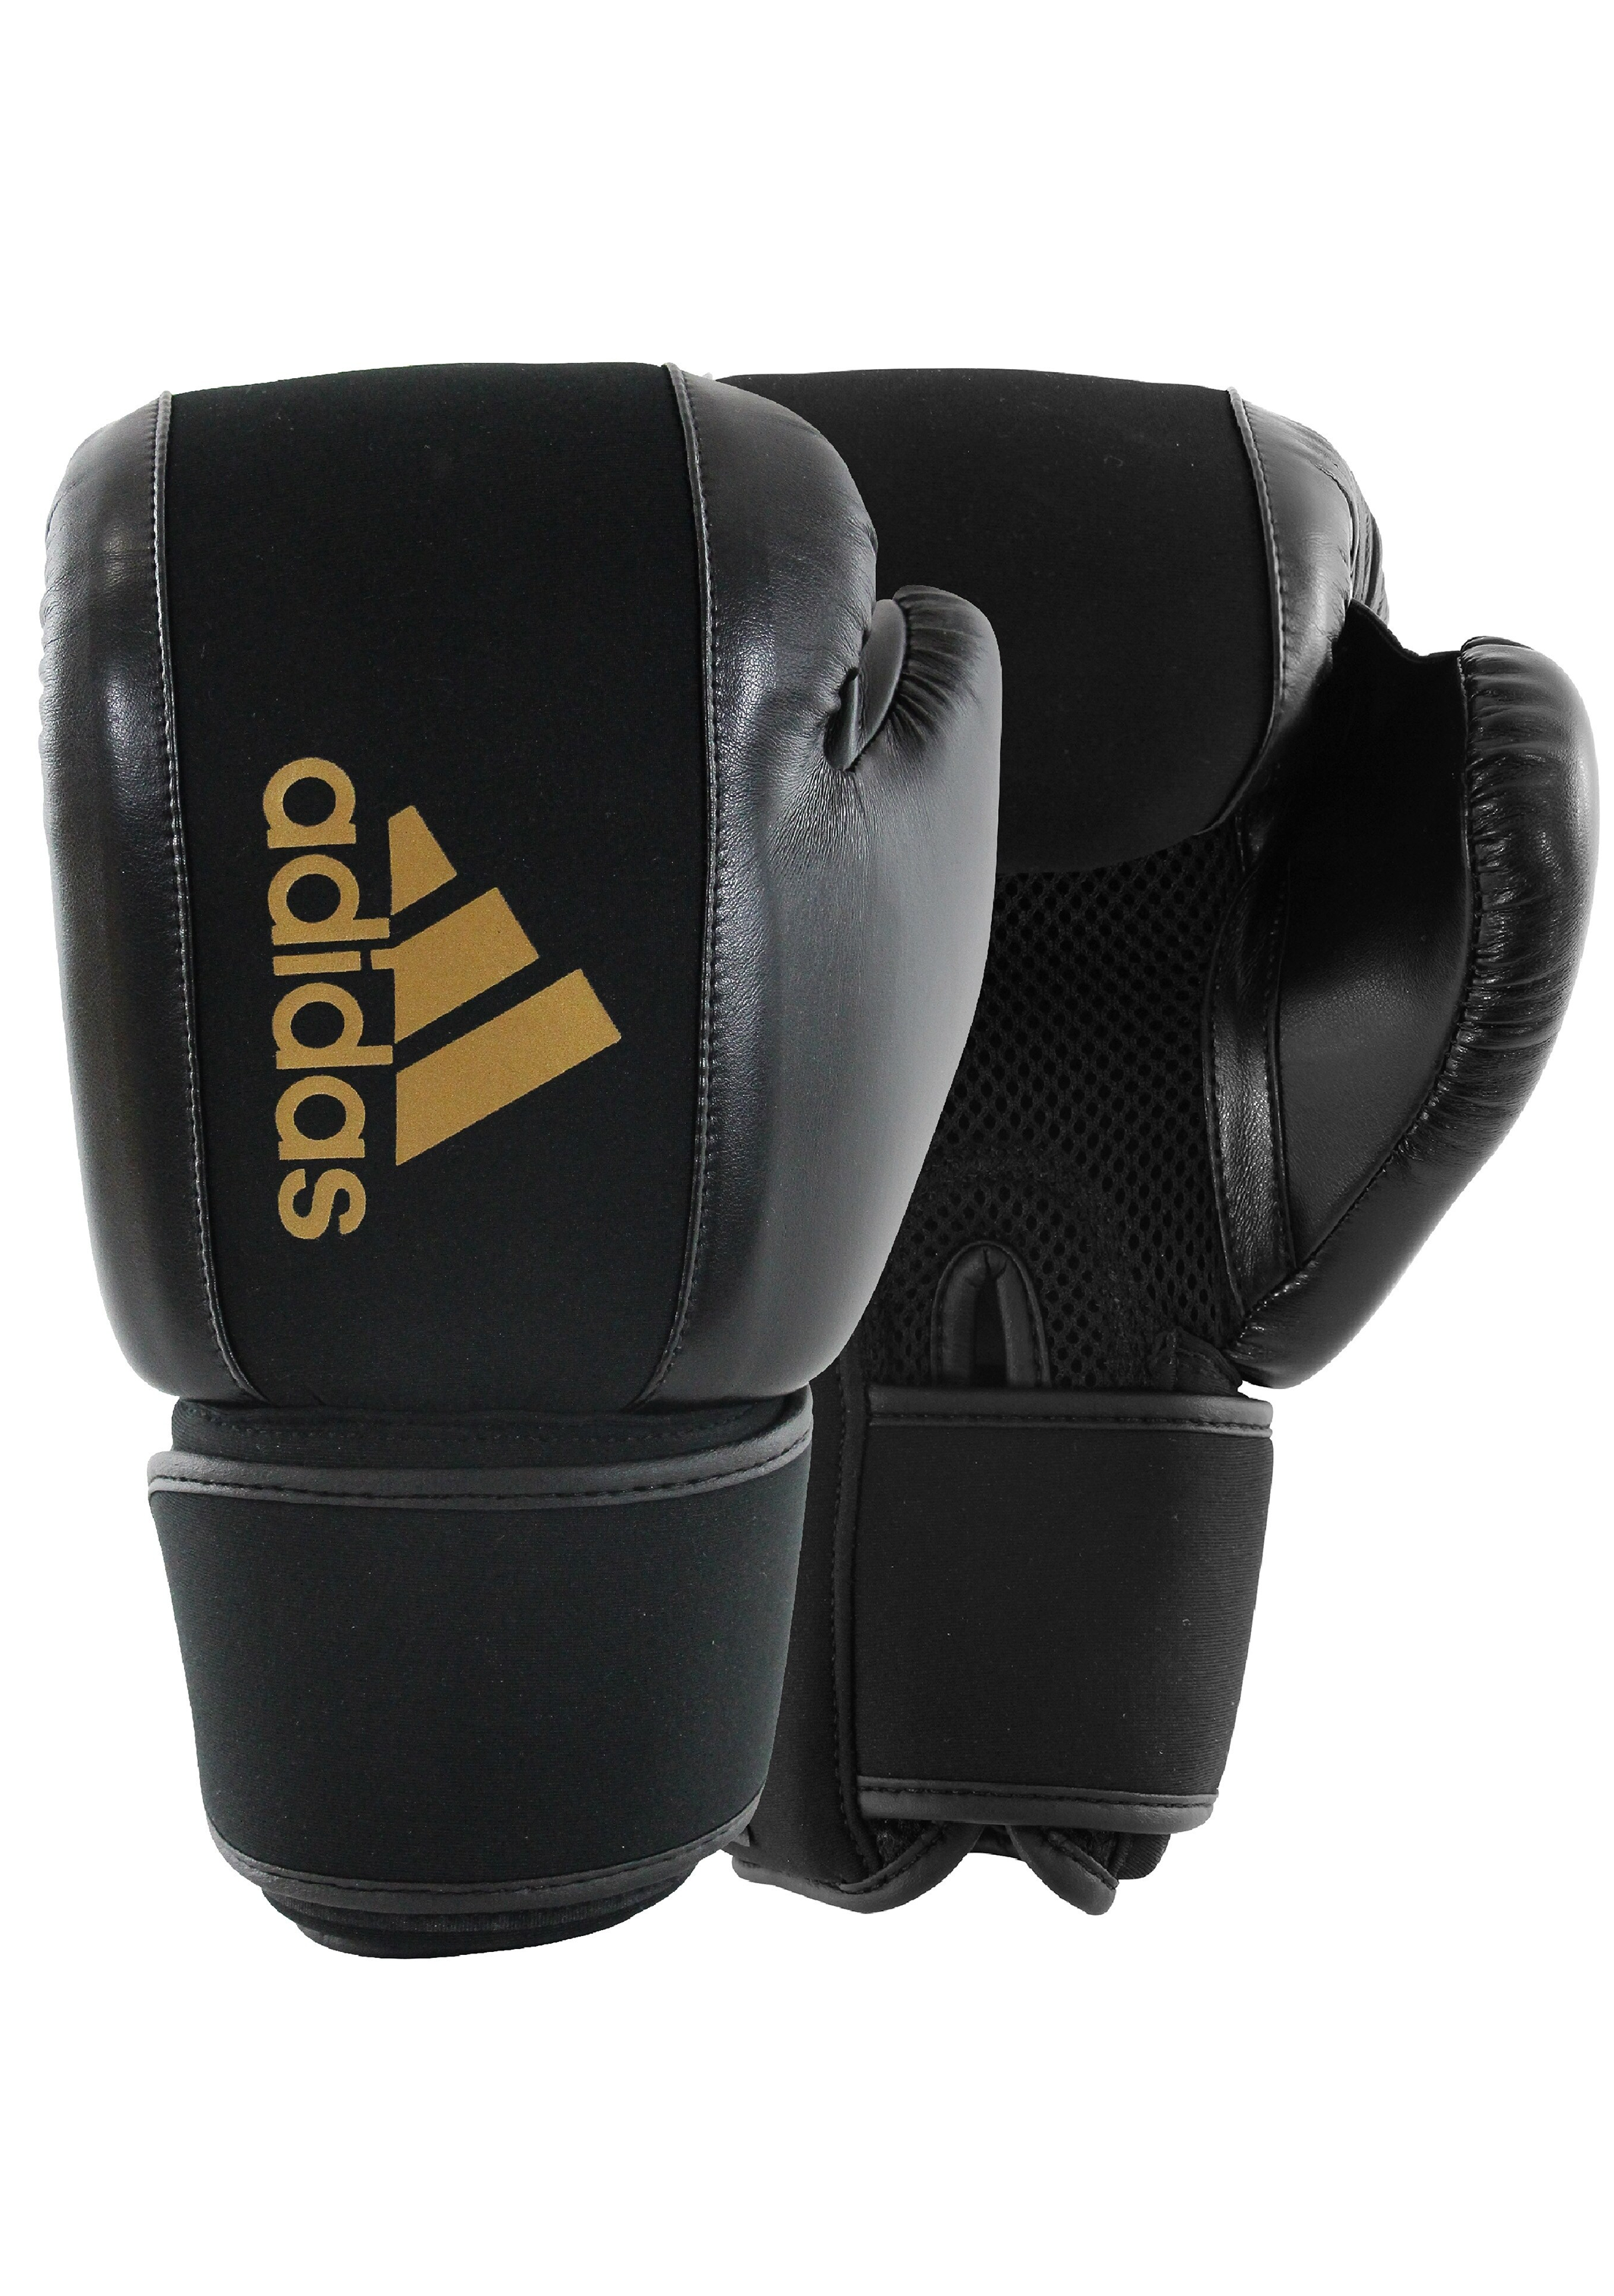 – Unisex Adidas BLACK/GOLD Washable Boxing ADIHBWG01 Kidd Jim Glove Sports